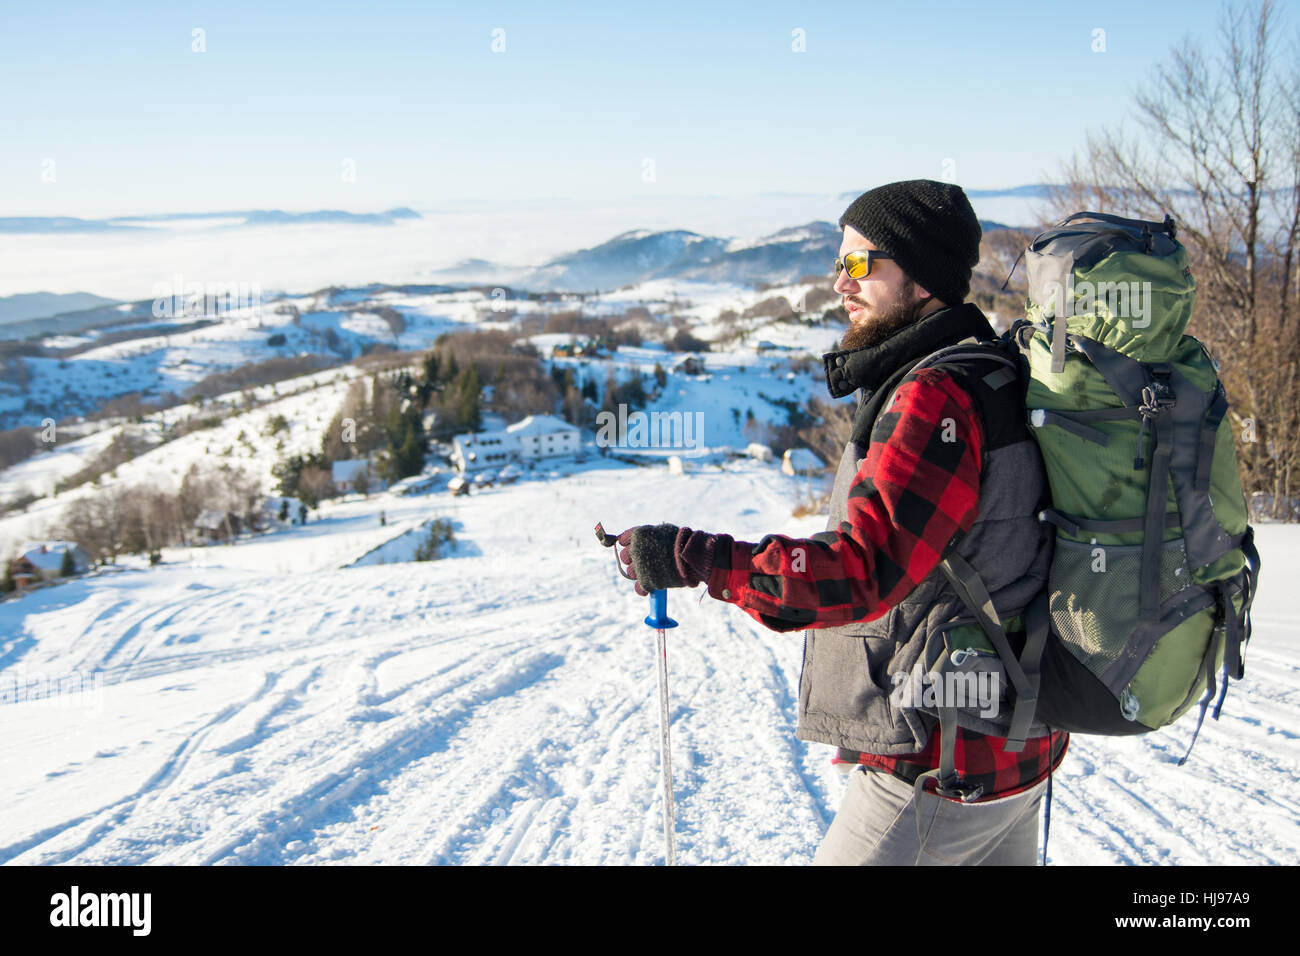 Bärtige Backpacker auf dem schneebedeckten Berg stehend Stockfoto